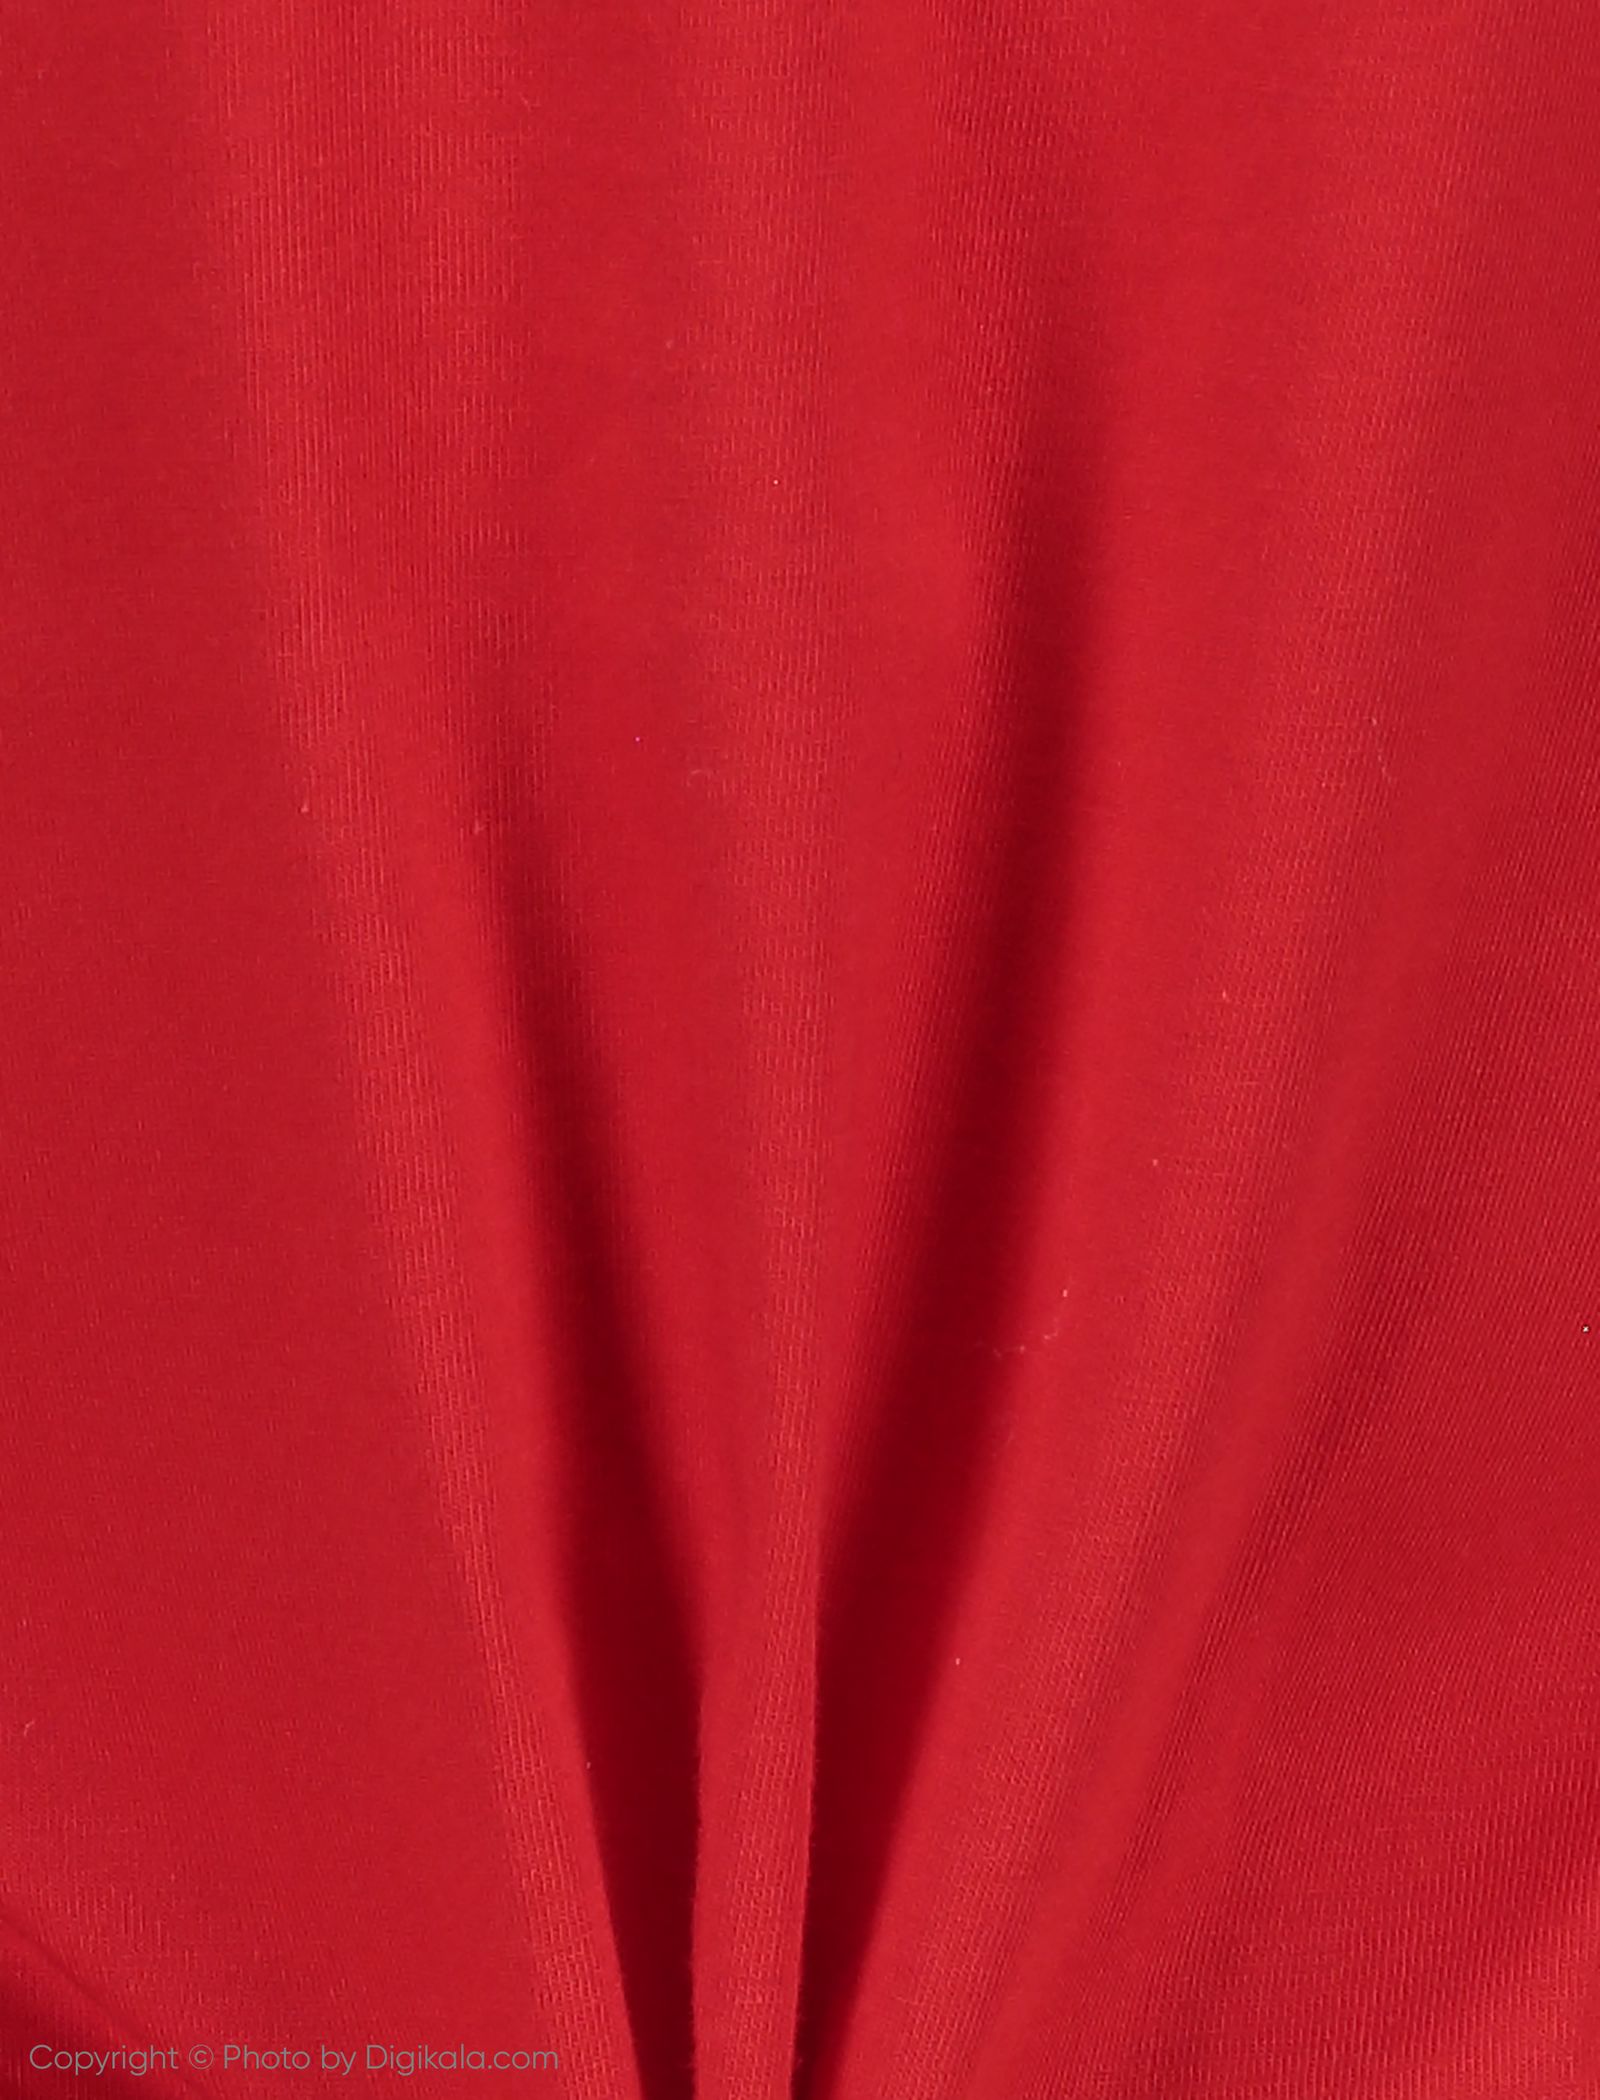 ست تی شرت و شلوار راحتی زنانه ناربن مدل 1521167-72 - قرمز - 6